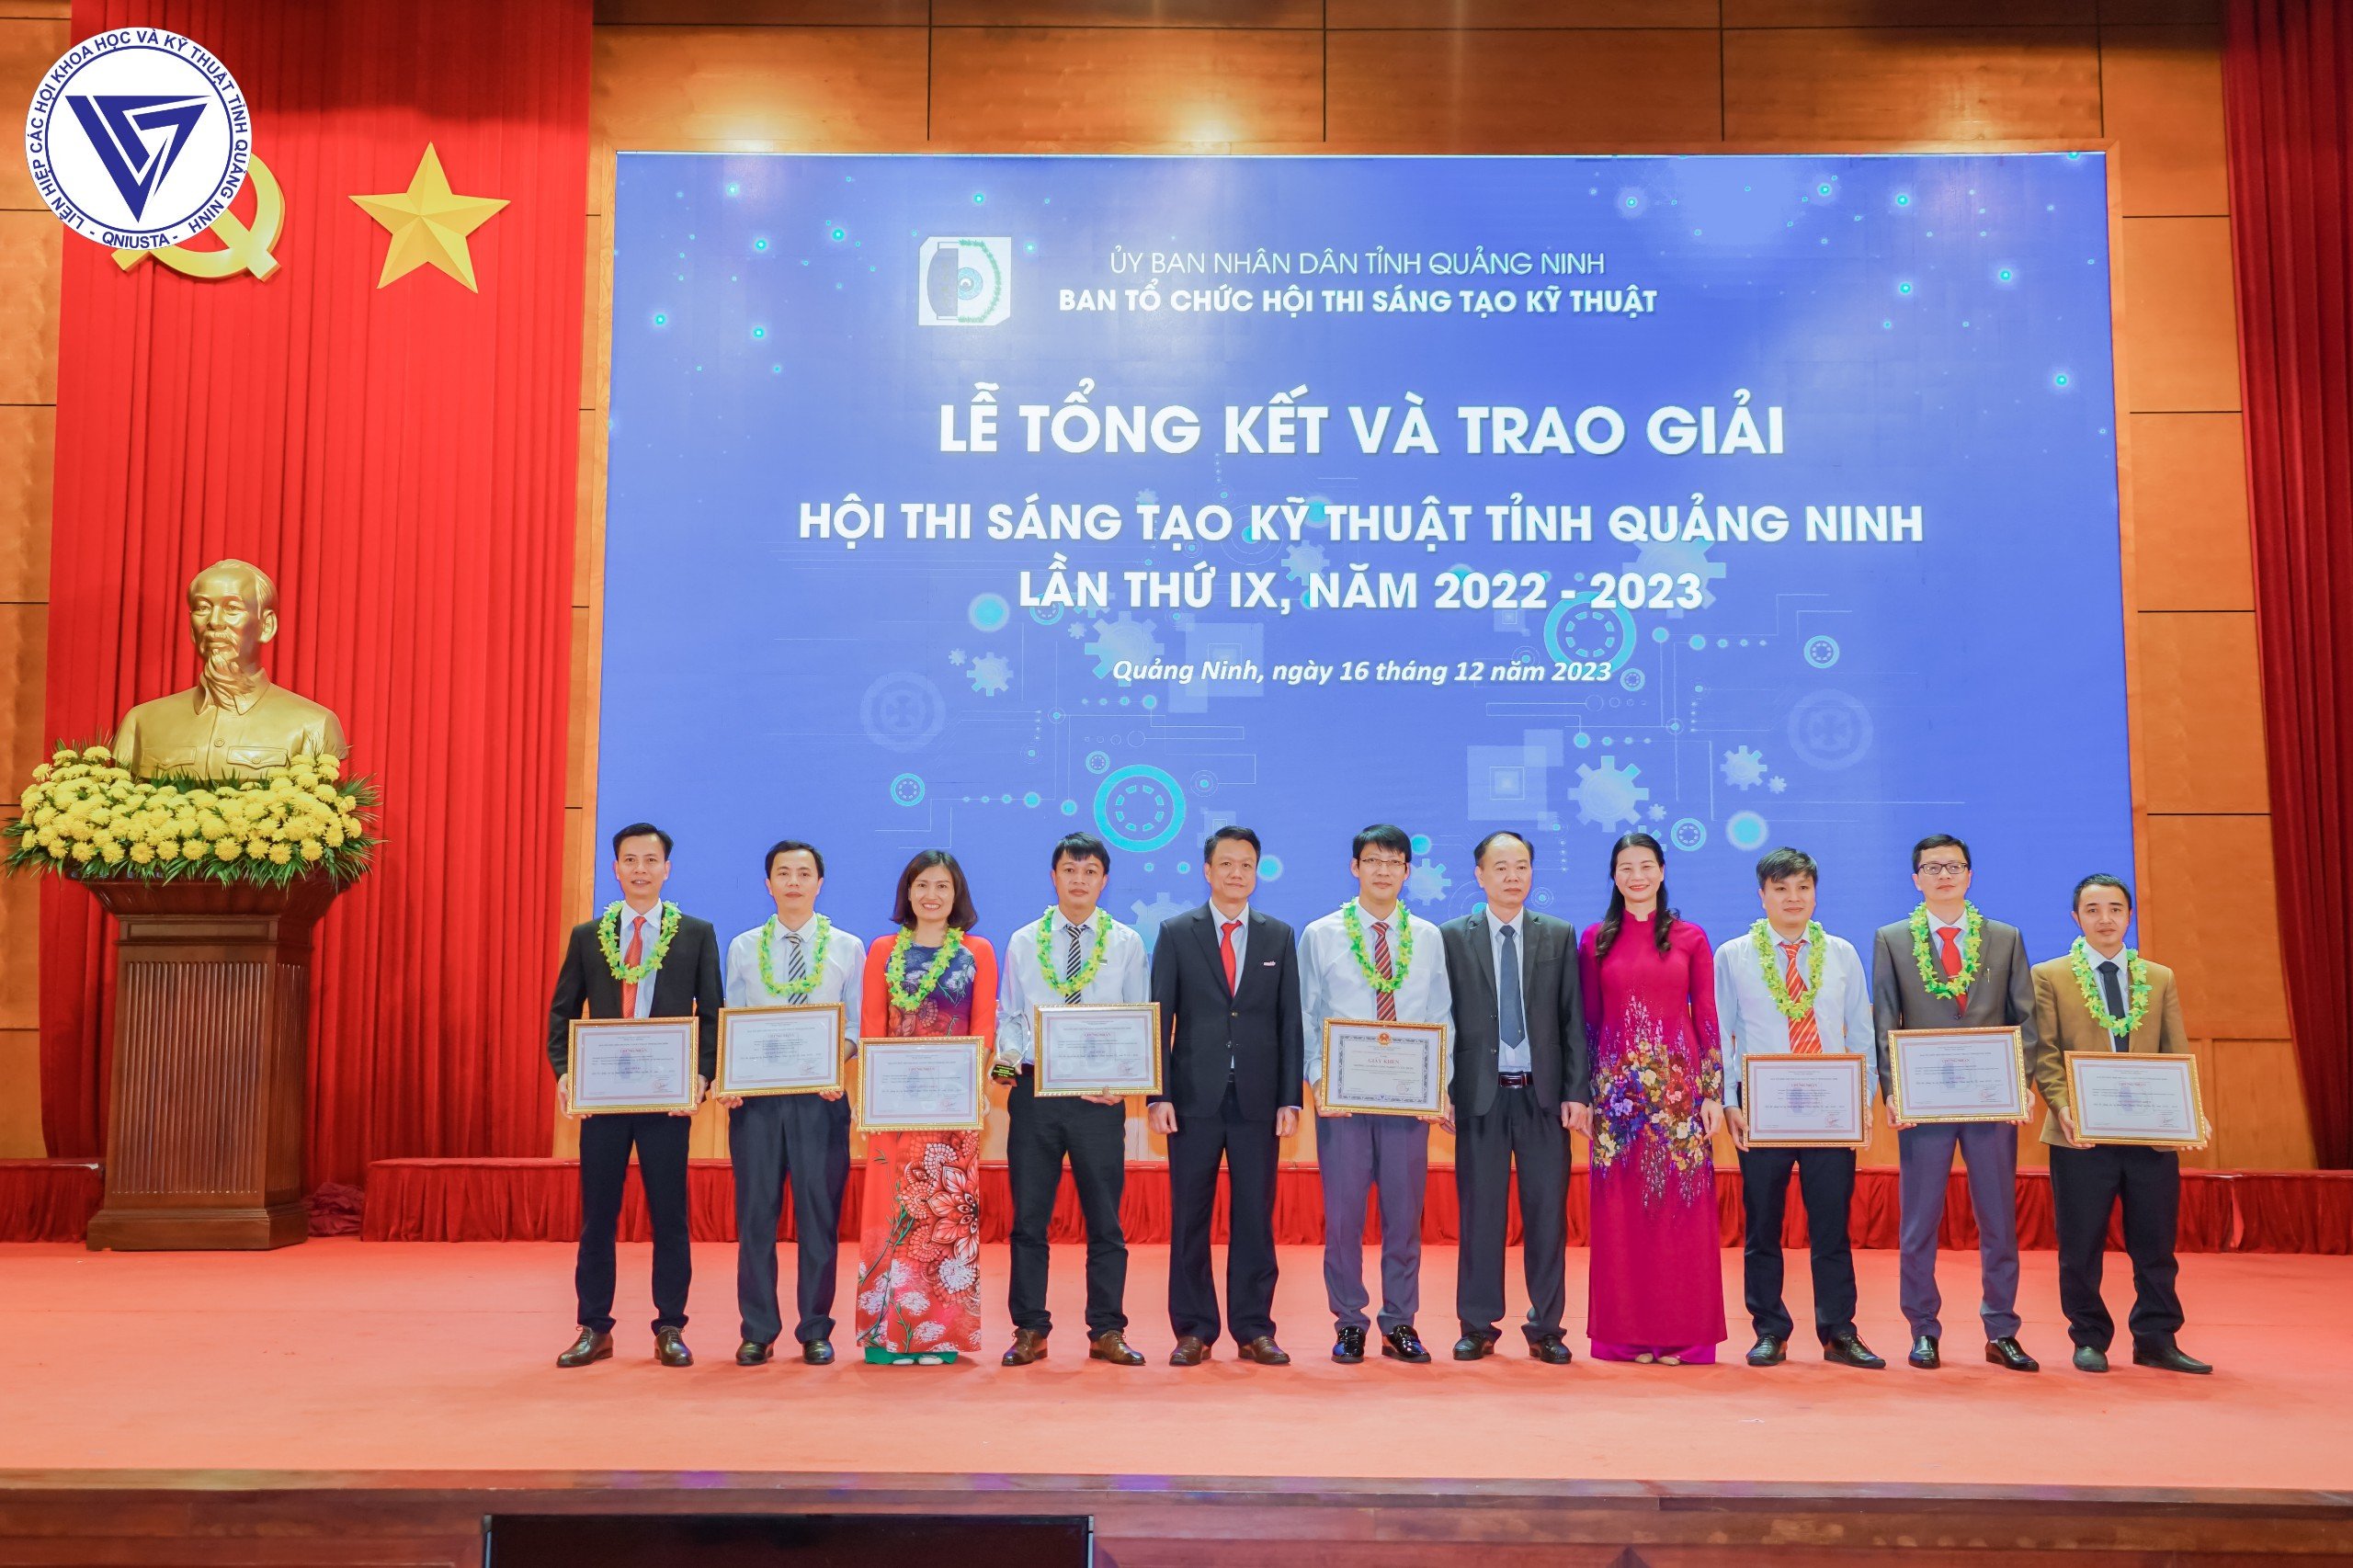 Tổng kết và trao giải Hội thi Sáng tạo kỹ thuật tỉnh Quảng Ninh lần thứ IX